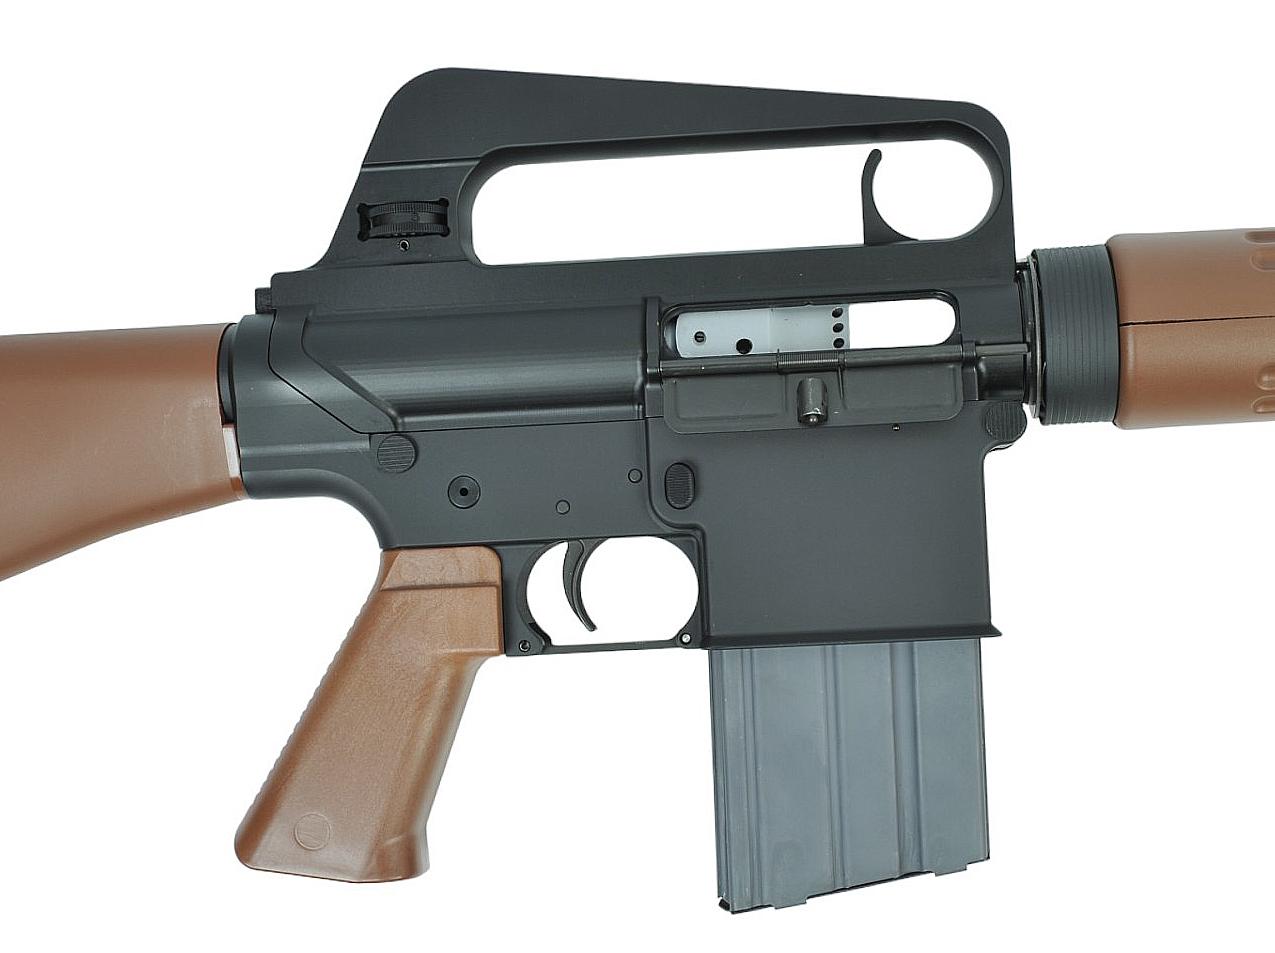 Brownells BRN-10 Armalite-Style 7.62x51mm Semi-Automatic Rifle - FFL # BRN-10-00177 (K1S1)